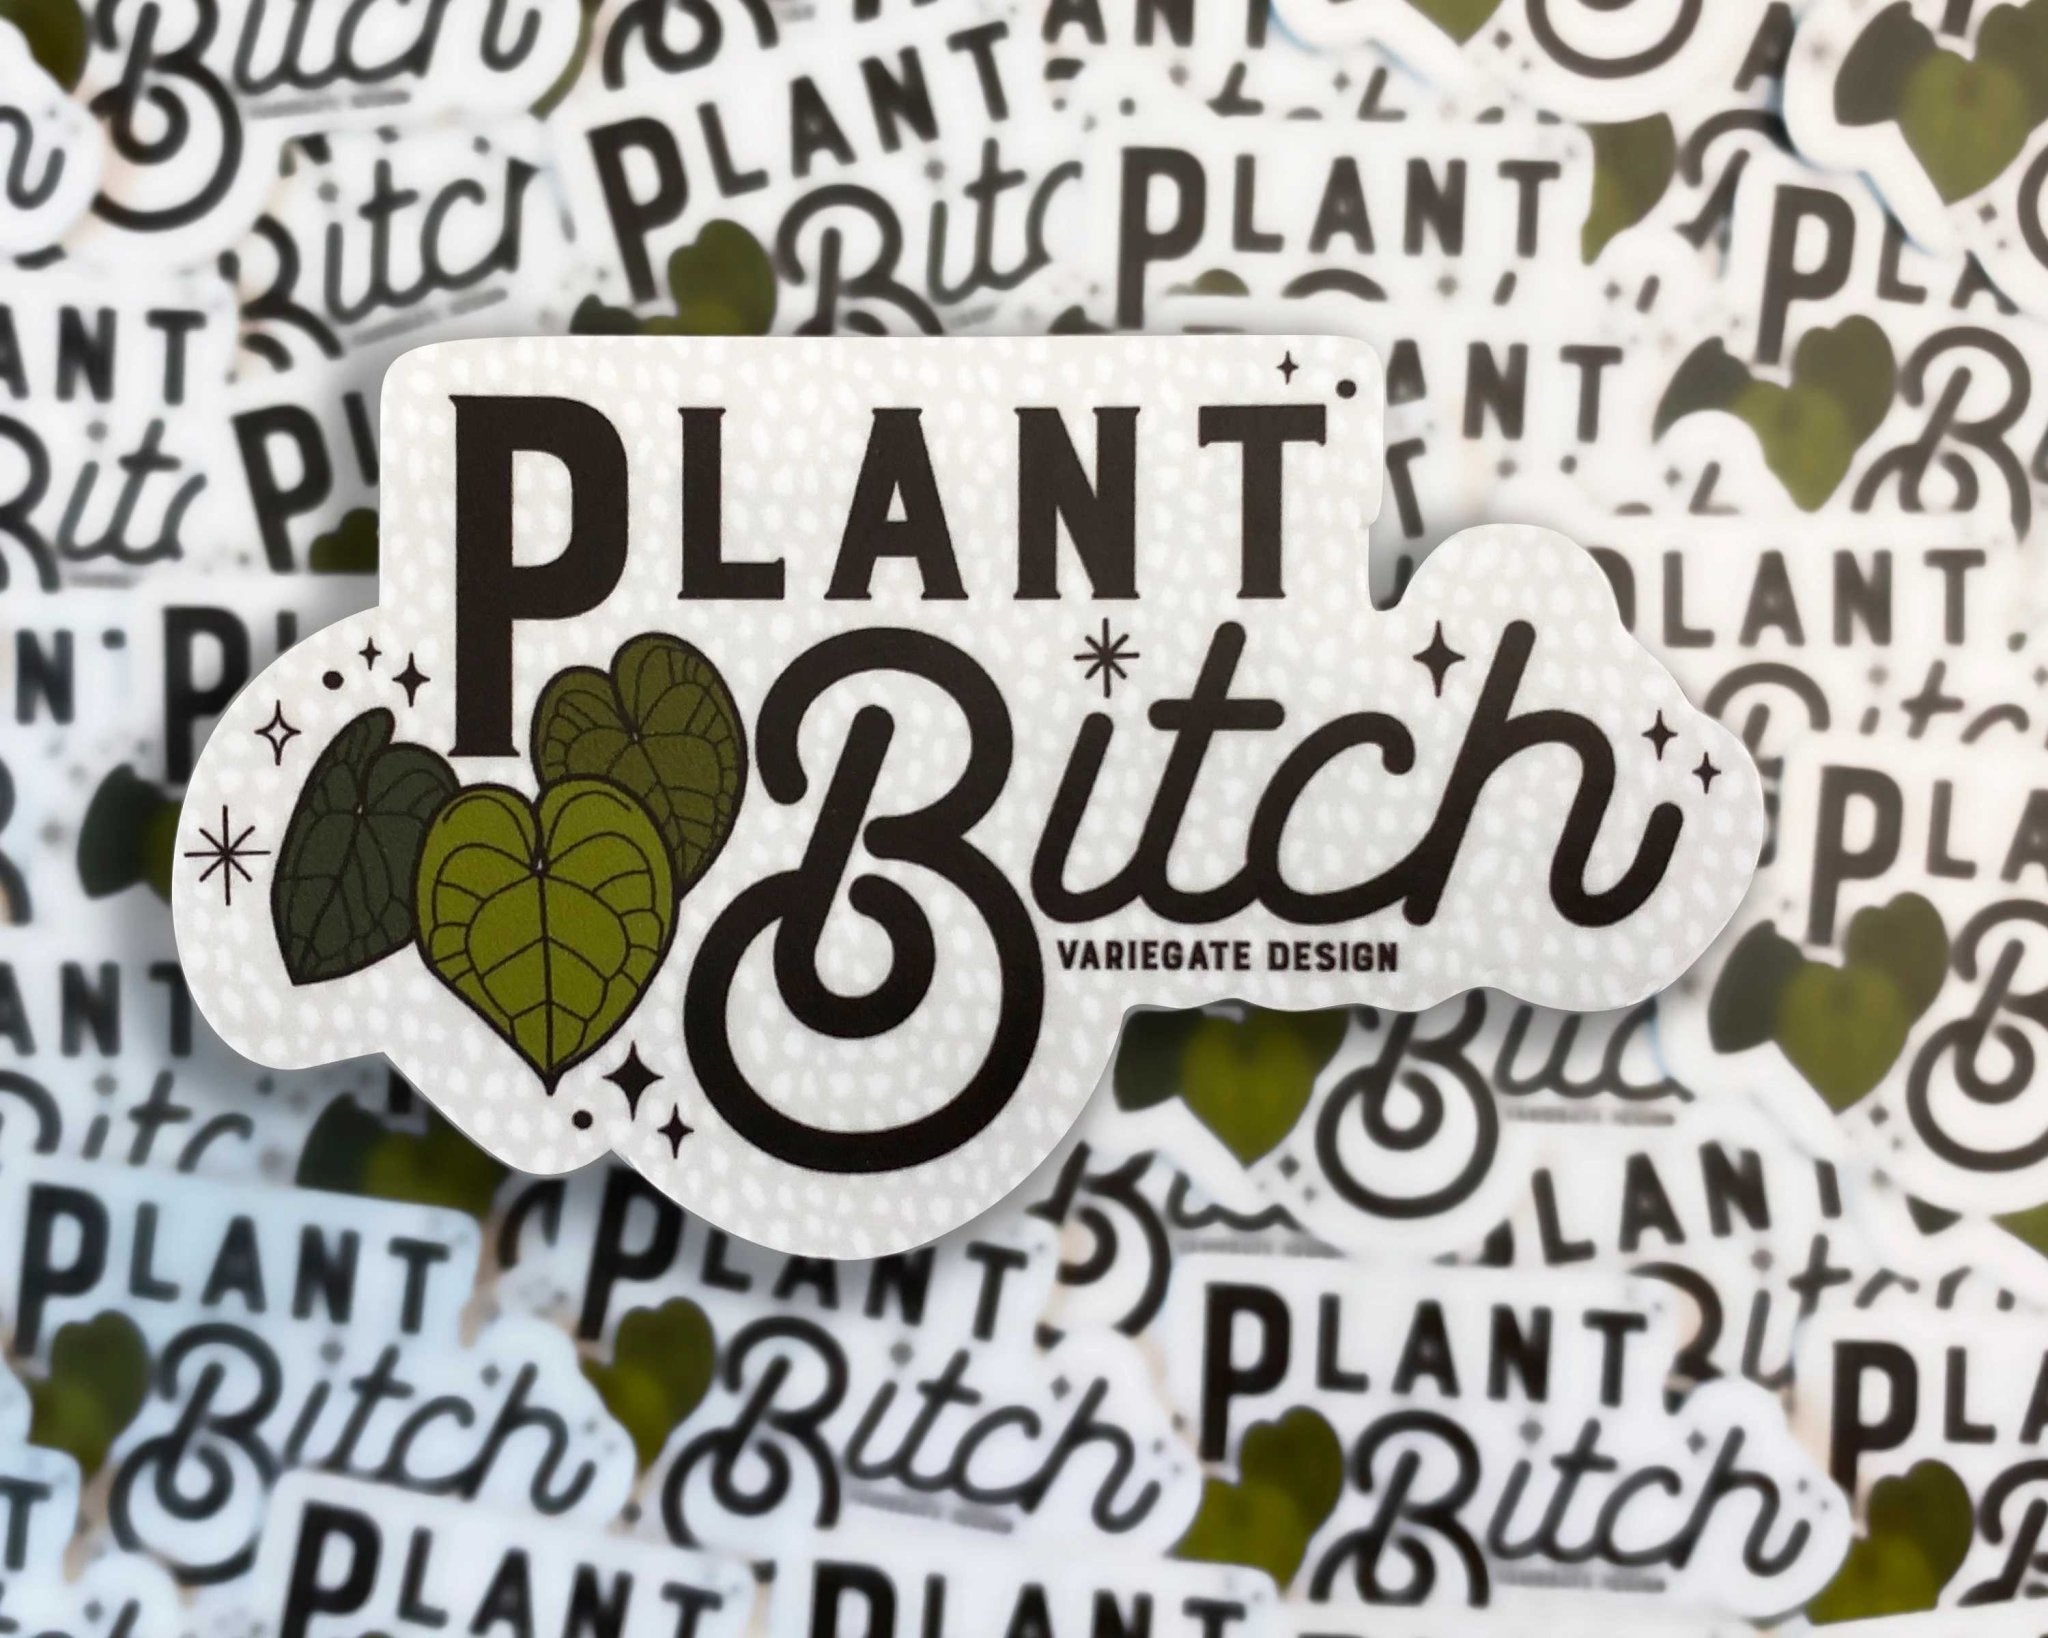 STICKER | Plant Bitch - Floret + Foliage Flower delivery in Fargo, North Dakota